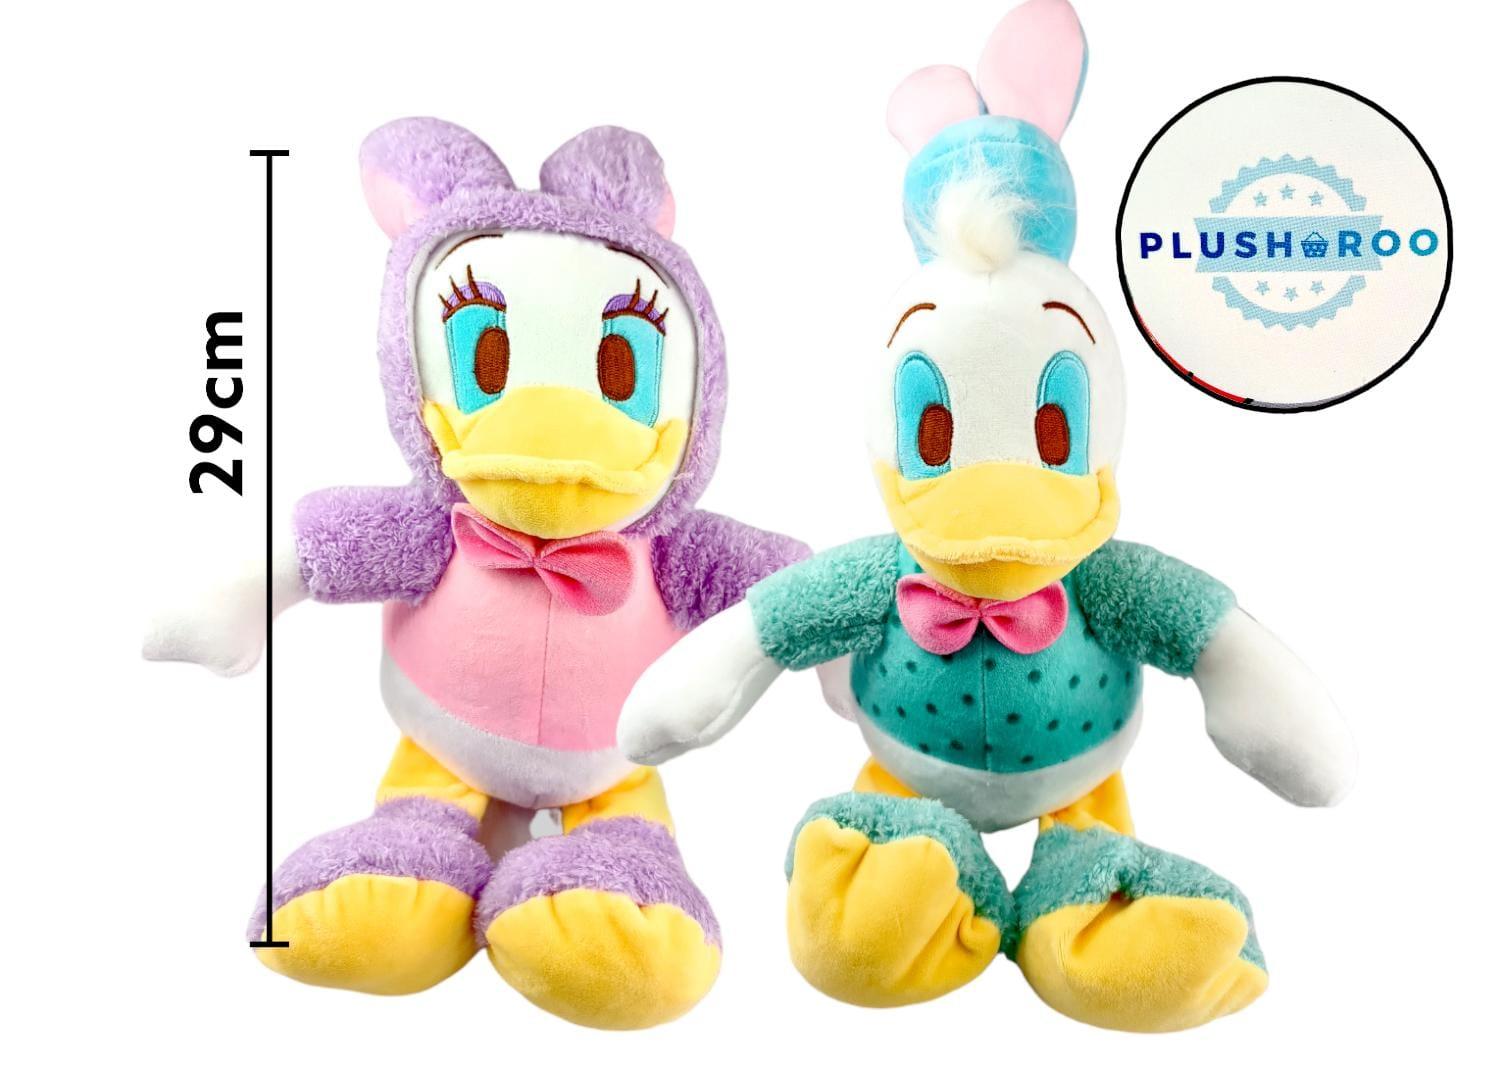 Peluche Premium PLUSHAROO Pato Donald y Deisy 29cm